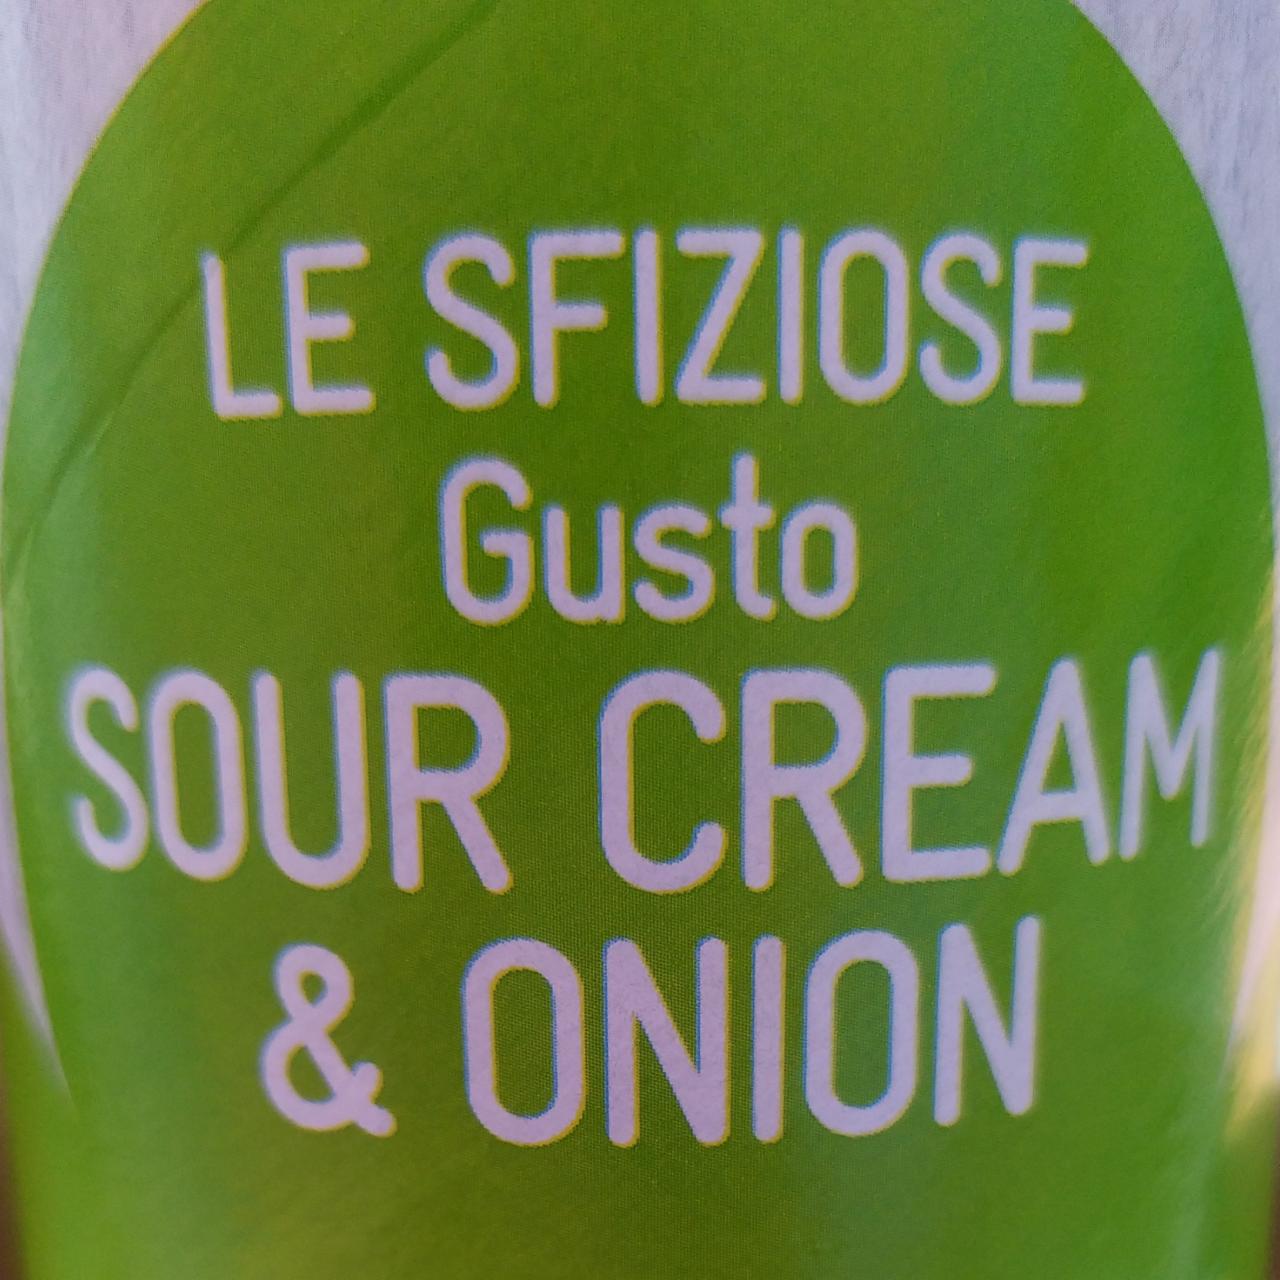 Fotografie - Le Sfiziose Gusto Sour Cream & Onion Conad